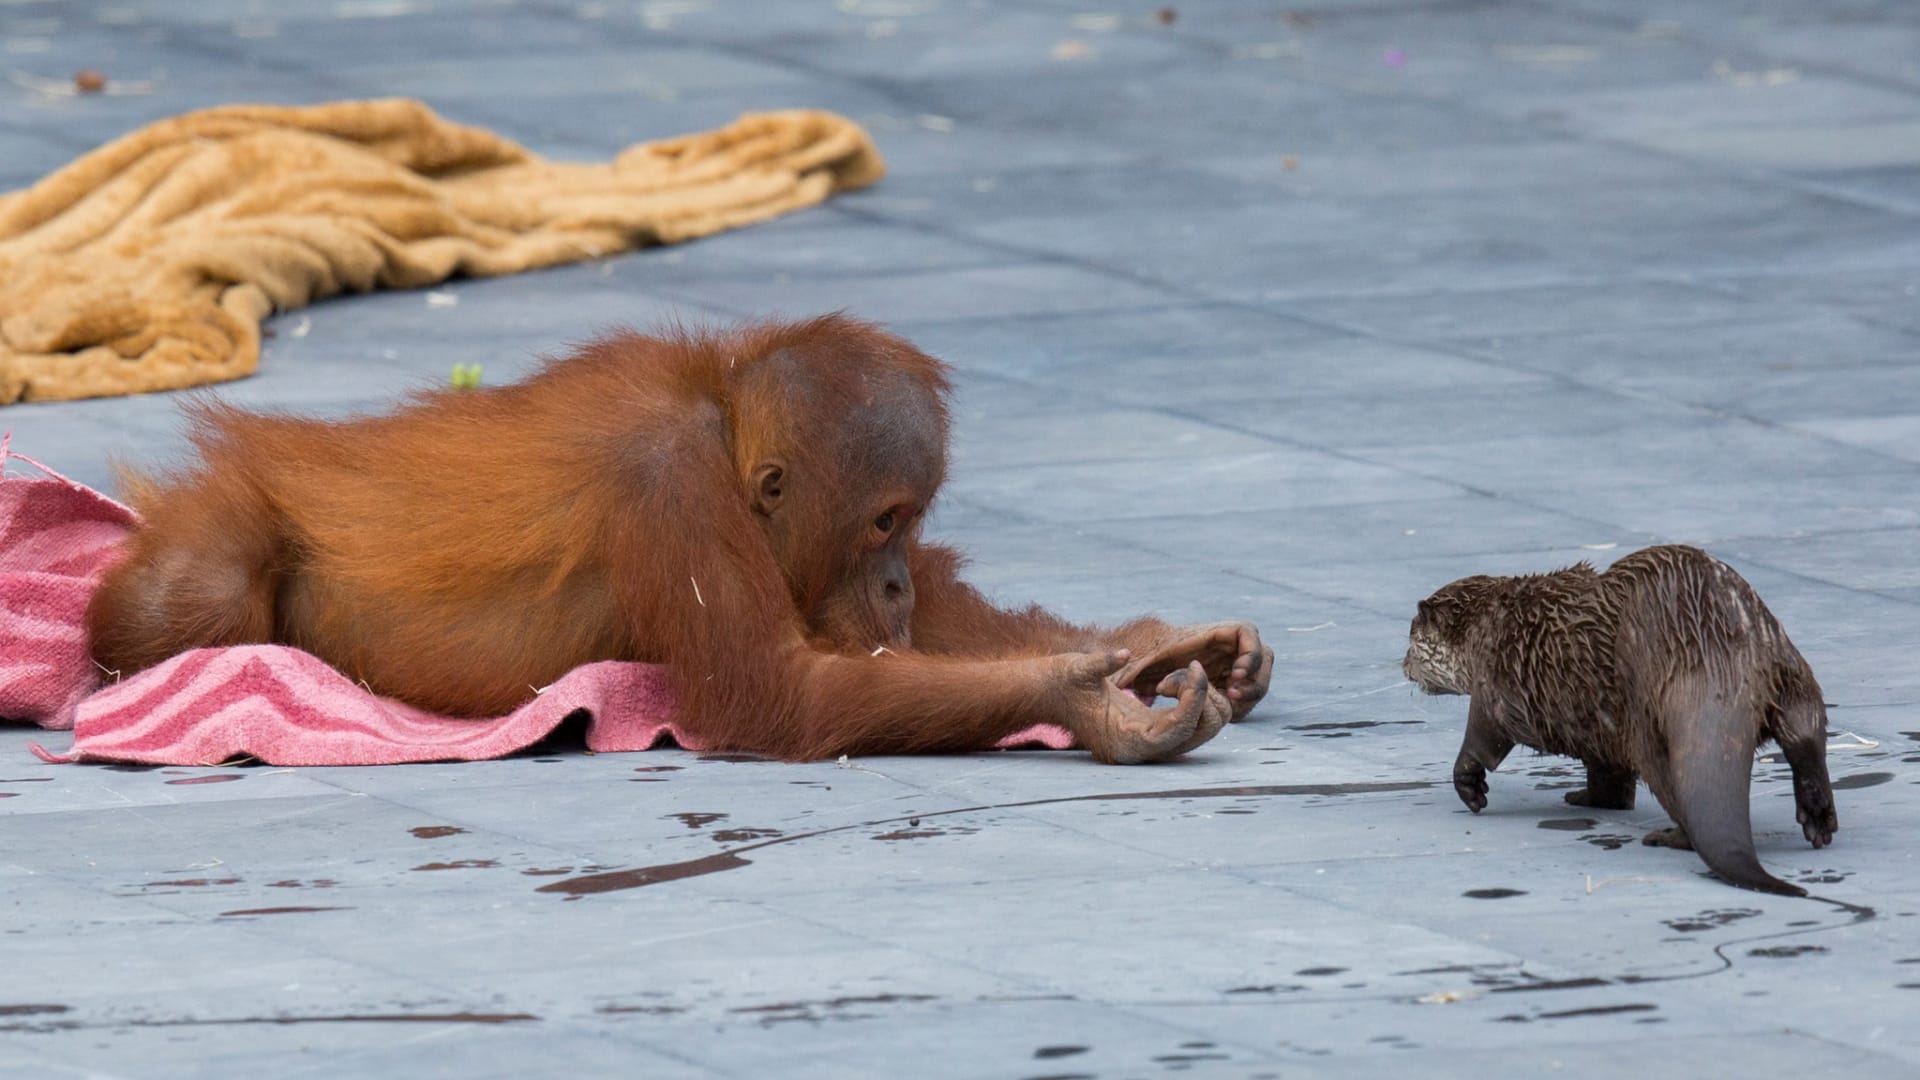 حديقة حيوانات تلتقط صور ظريفة لقردة أورانجوتان وهي تلعب مع أصدقائها القنادس